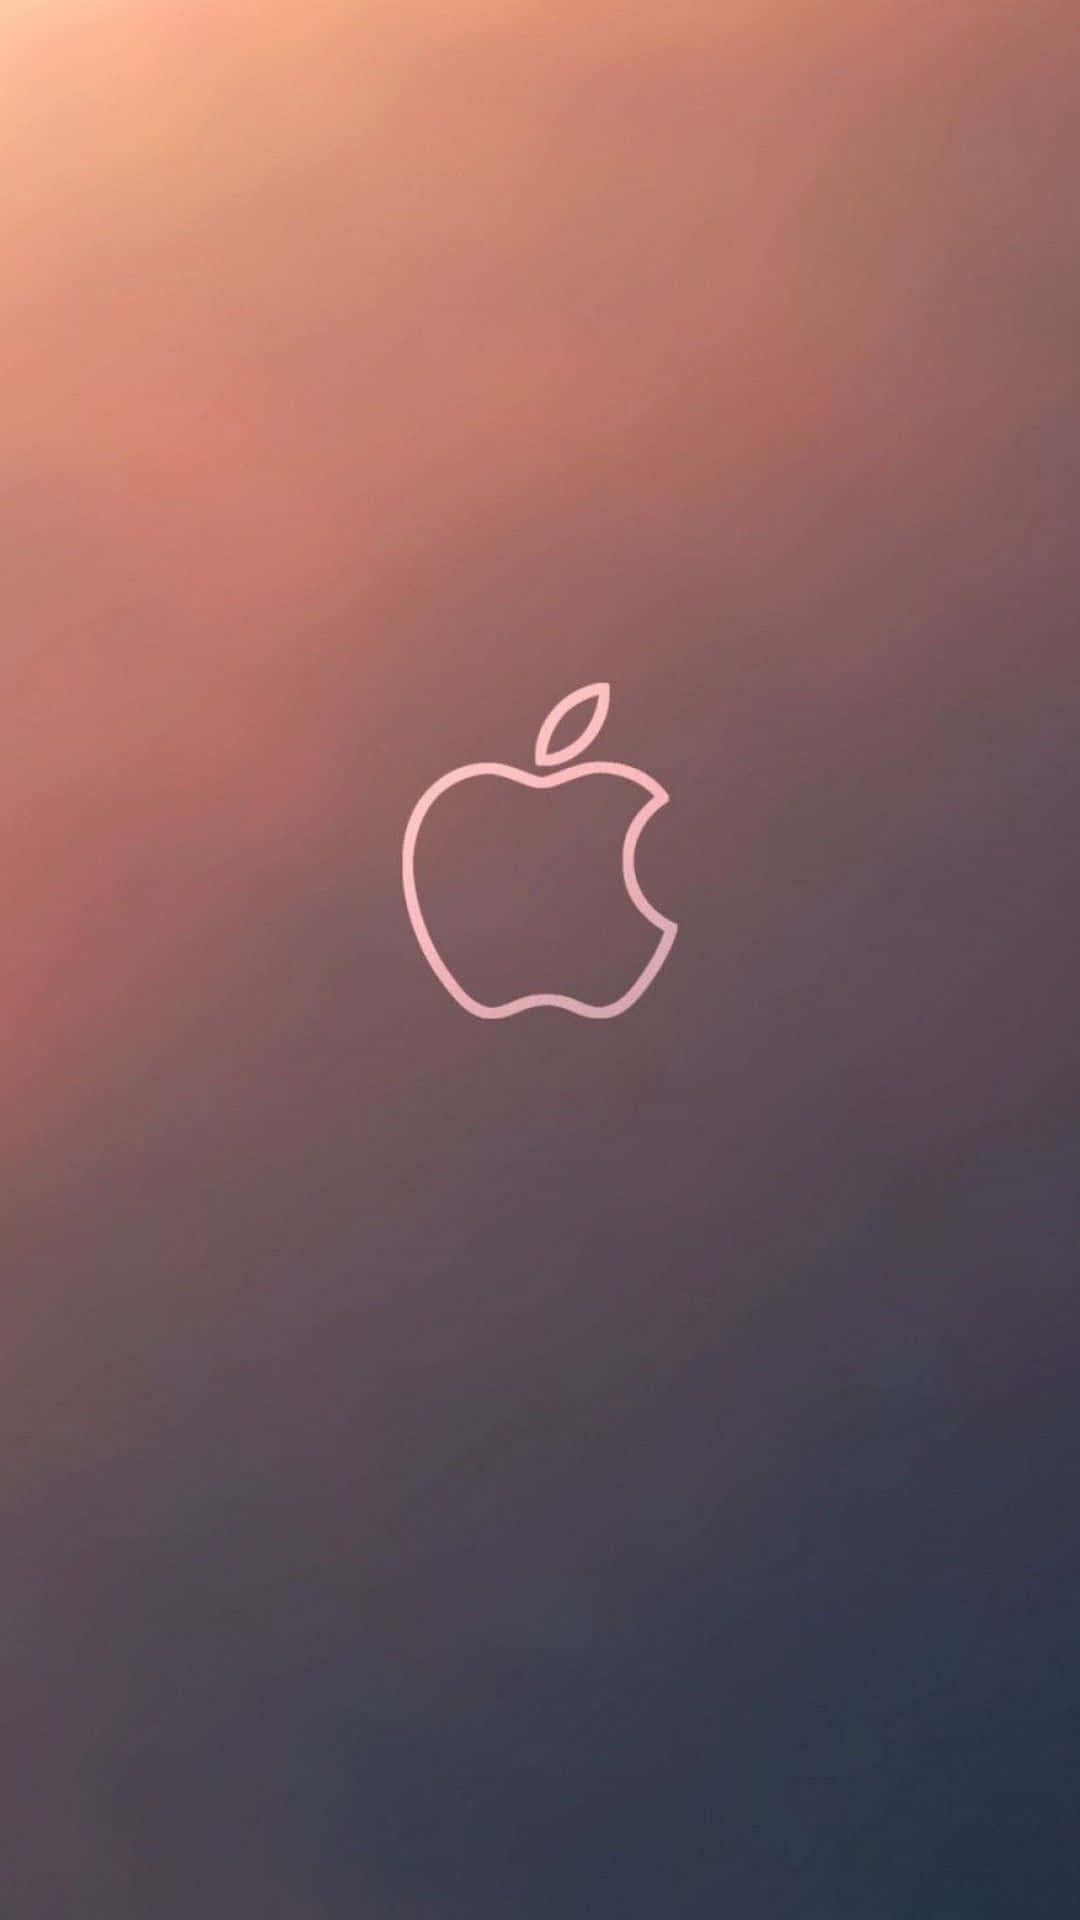 Puestade Sol En Gradiente Gris, Impresionante Fondo De Pantalla De Alta Definición De Apple Para Iphone. Fondo de pantalla